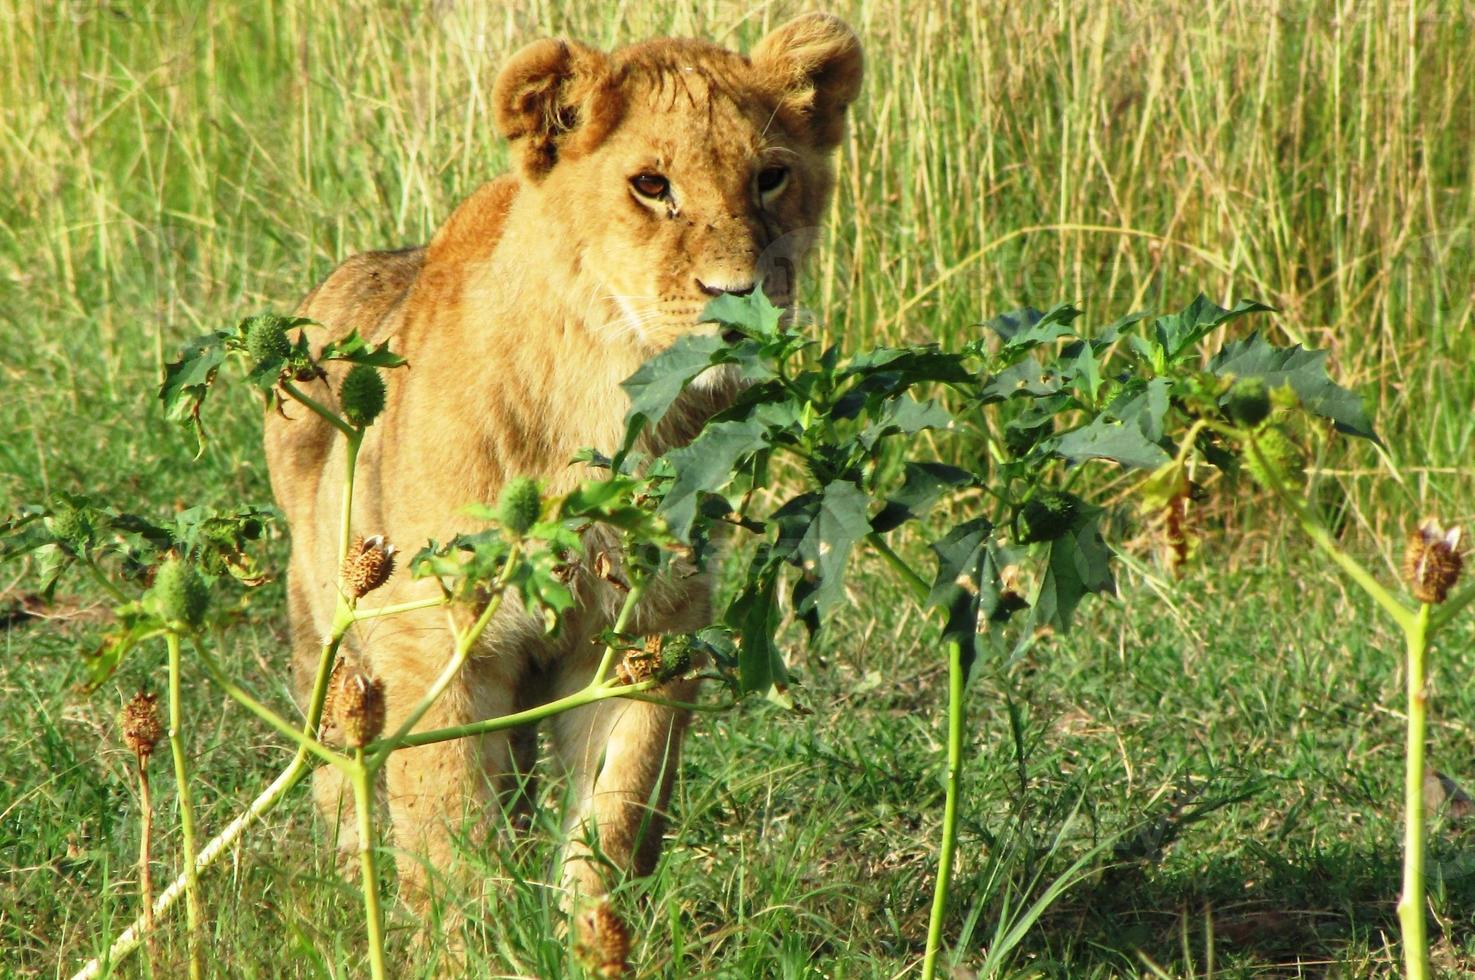 cuccioli di leone in masai mara foto